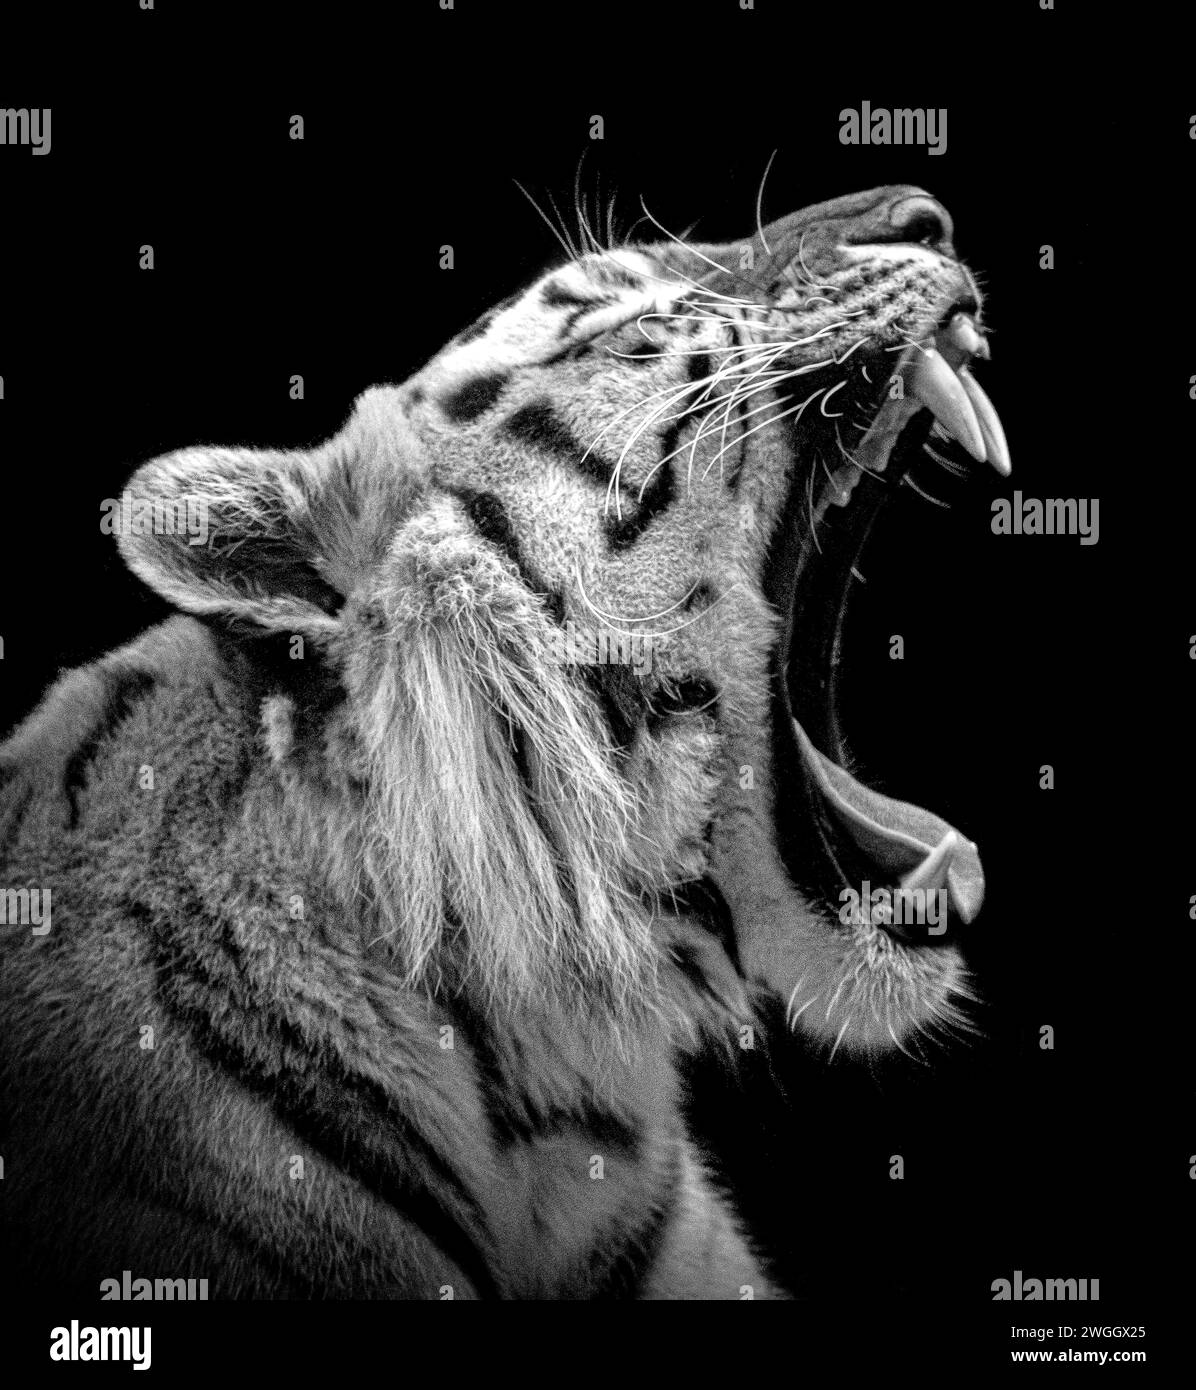 Tiger mette a disposizione i suoi terrificanti denti, LO ZOO DI BLACKPOOL, Regno Unito, IMMAGINI STRAORDINARIE scattate nei giardini zoologici del Regno Unito mostrano le mascelle spalancate dei nostri predatori più temibili. Foto Stock